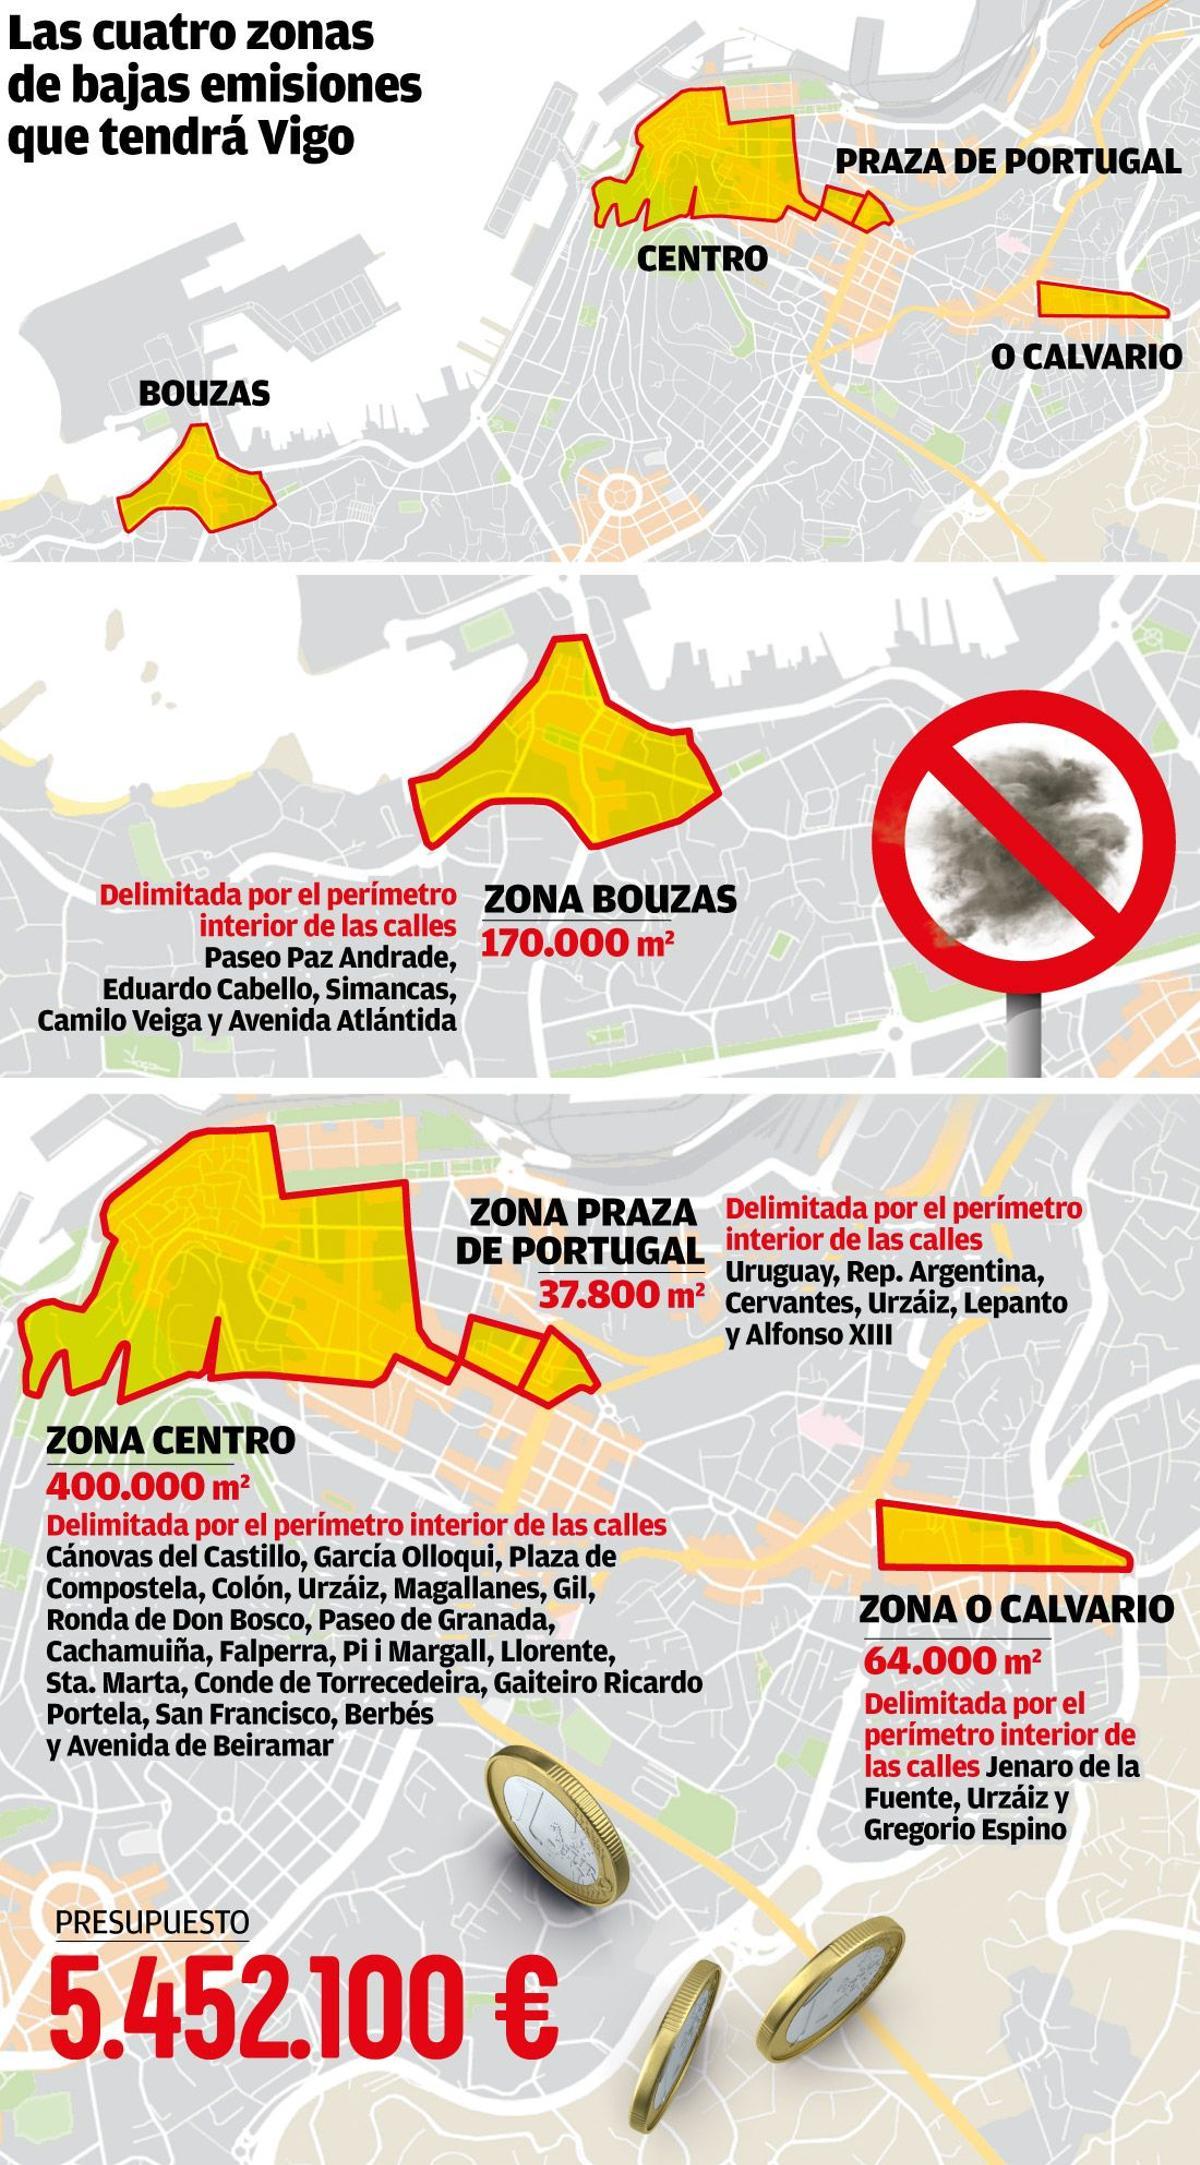 Zonas de bajas emisiones en Vigo.